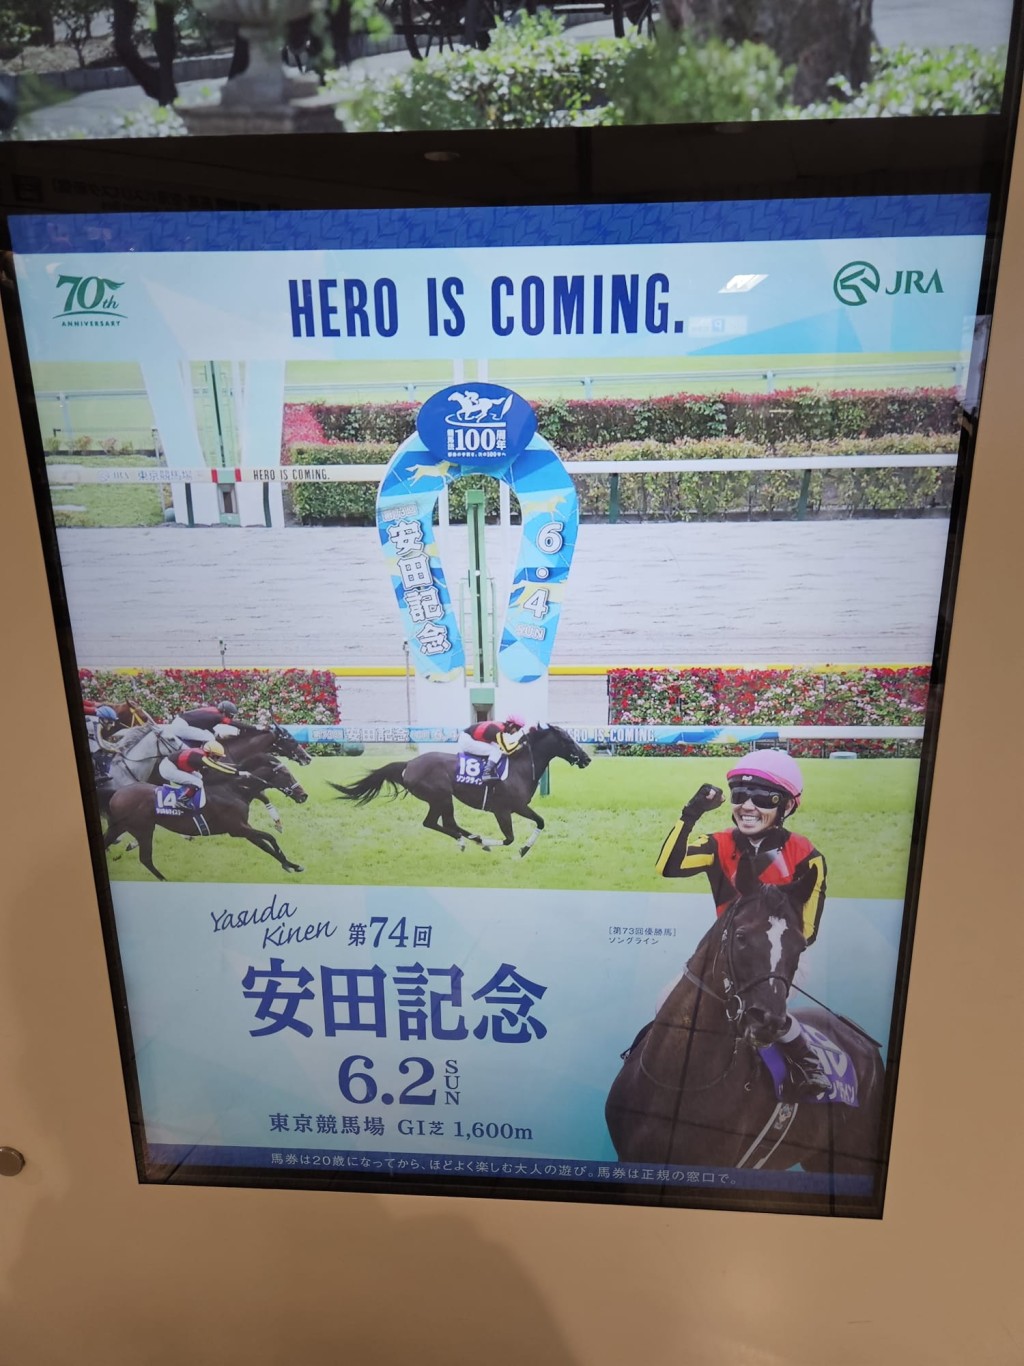 大賽前在日本東京街頭，見不少有關安田紀念賽的宣傳廣告。